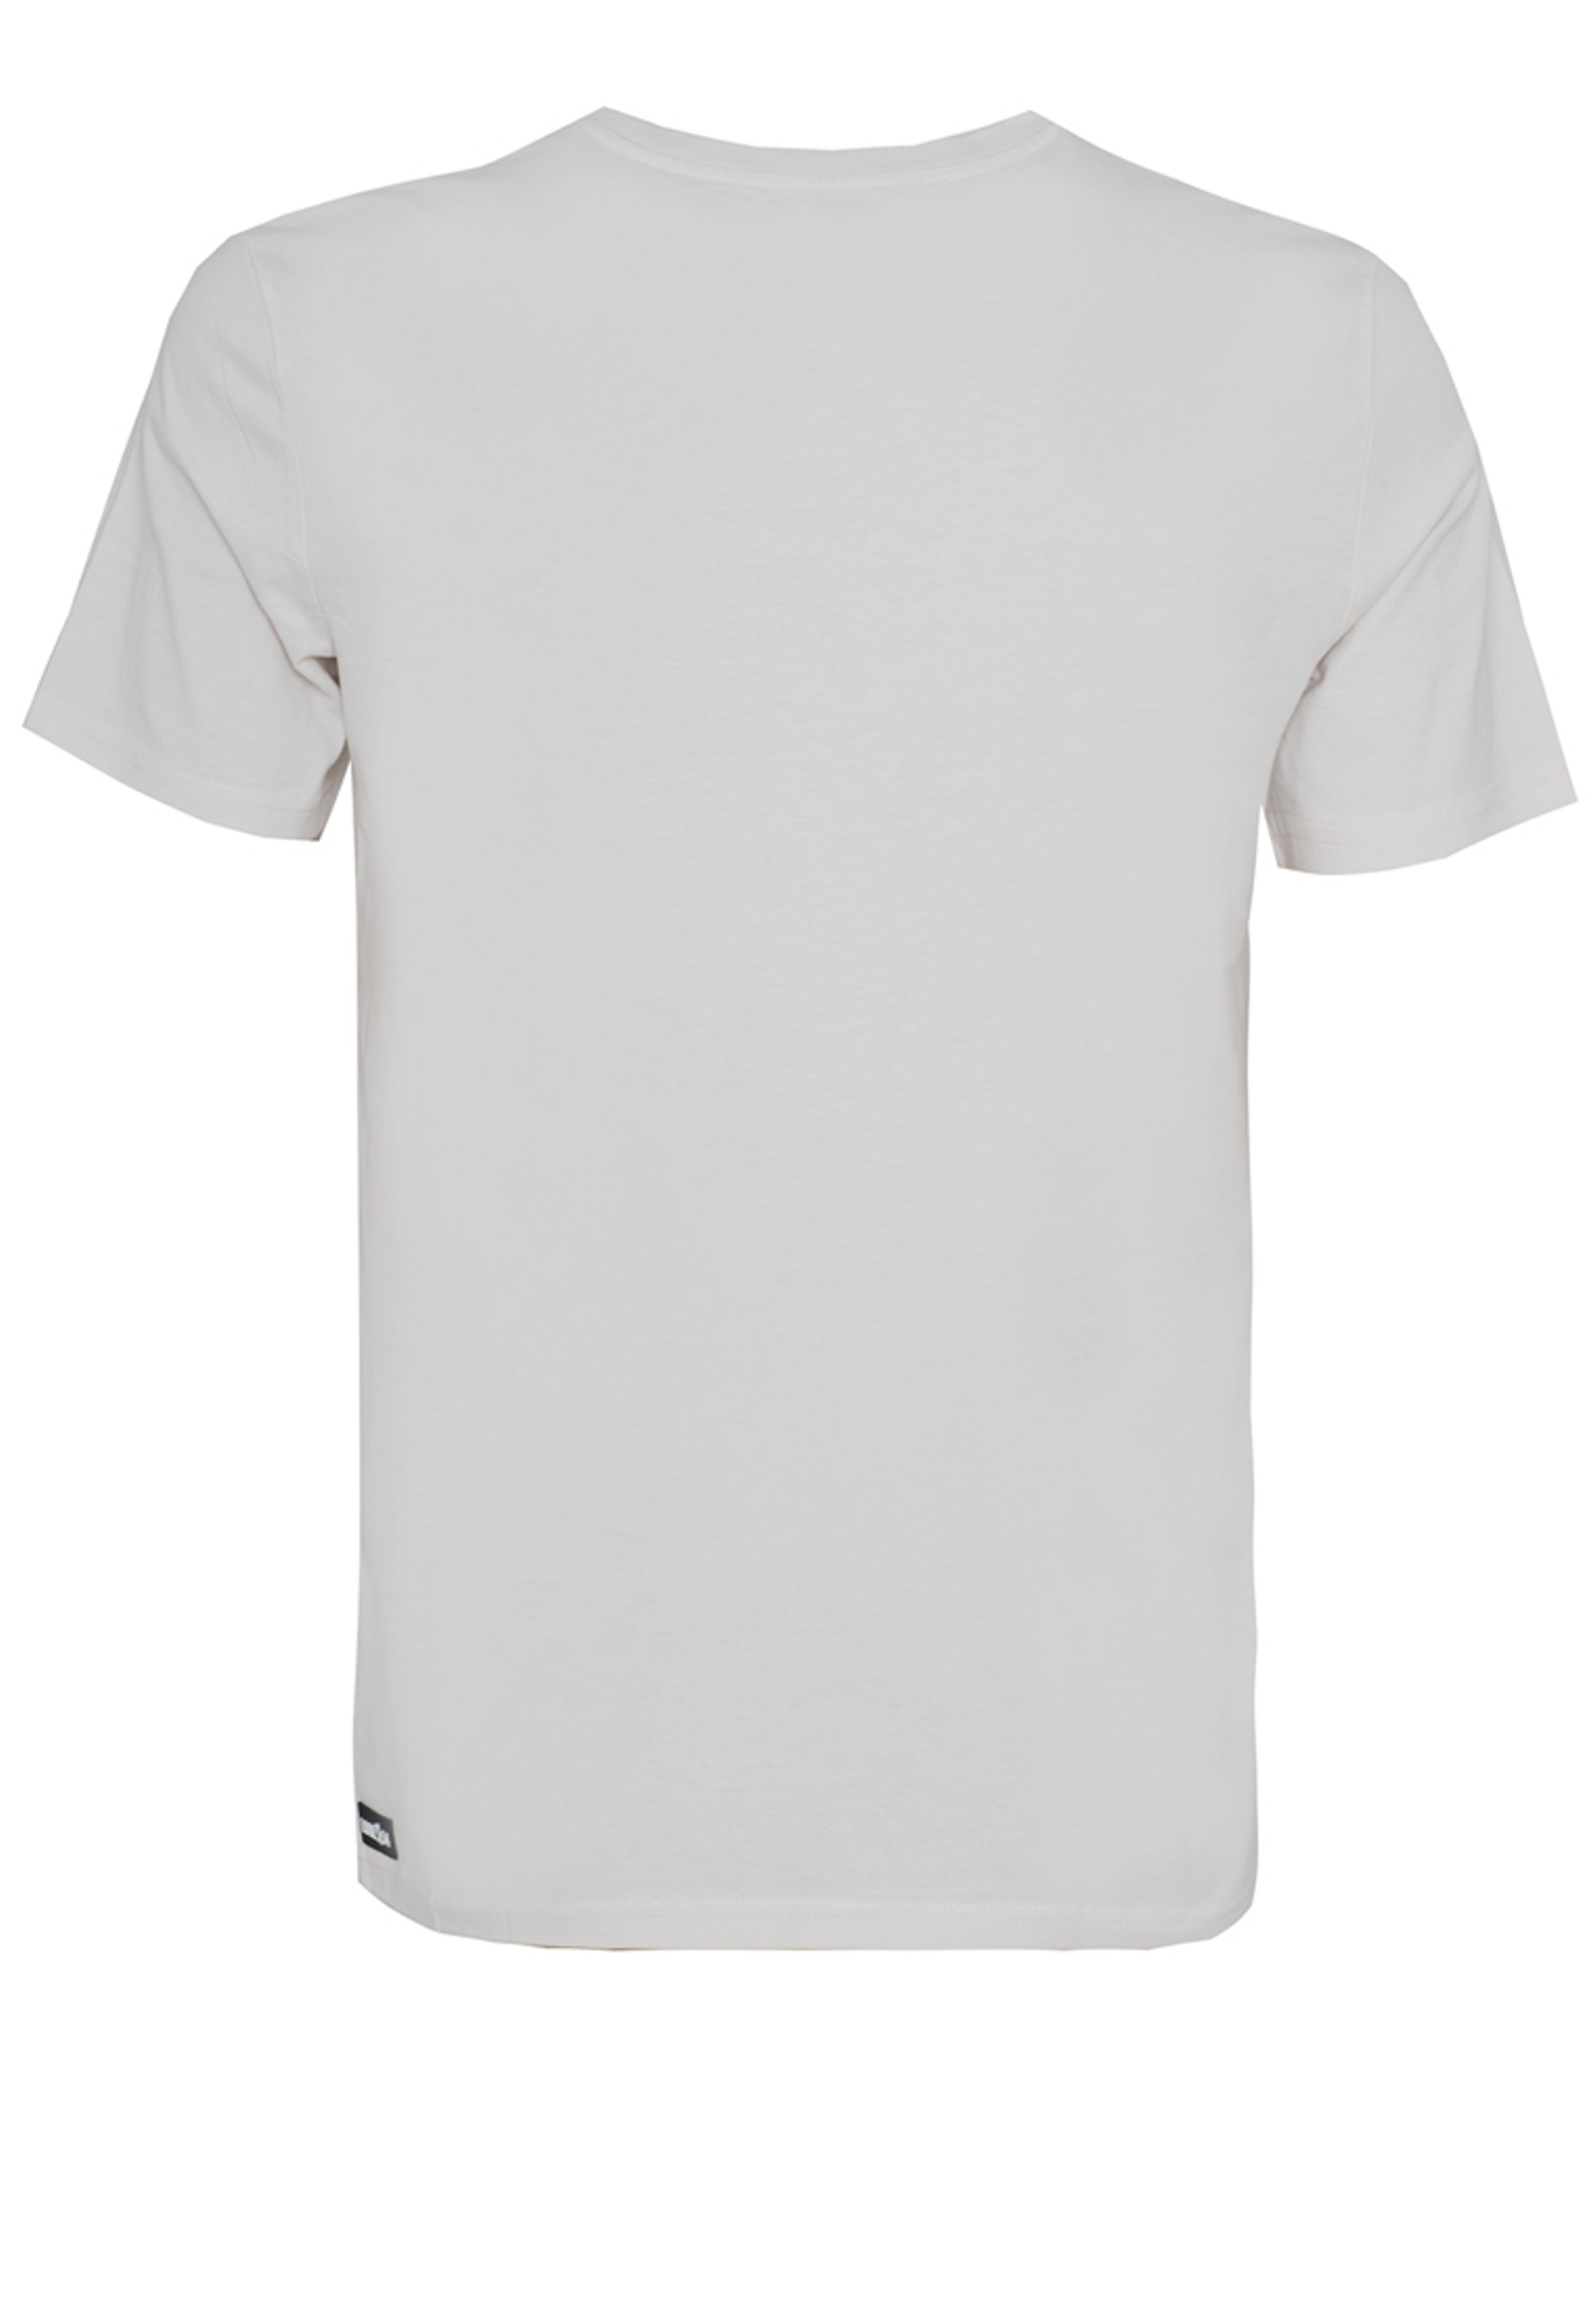 BRLN - The Bear - Unisex Shirt